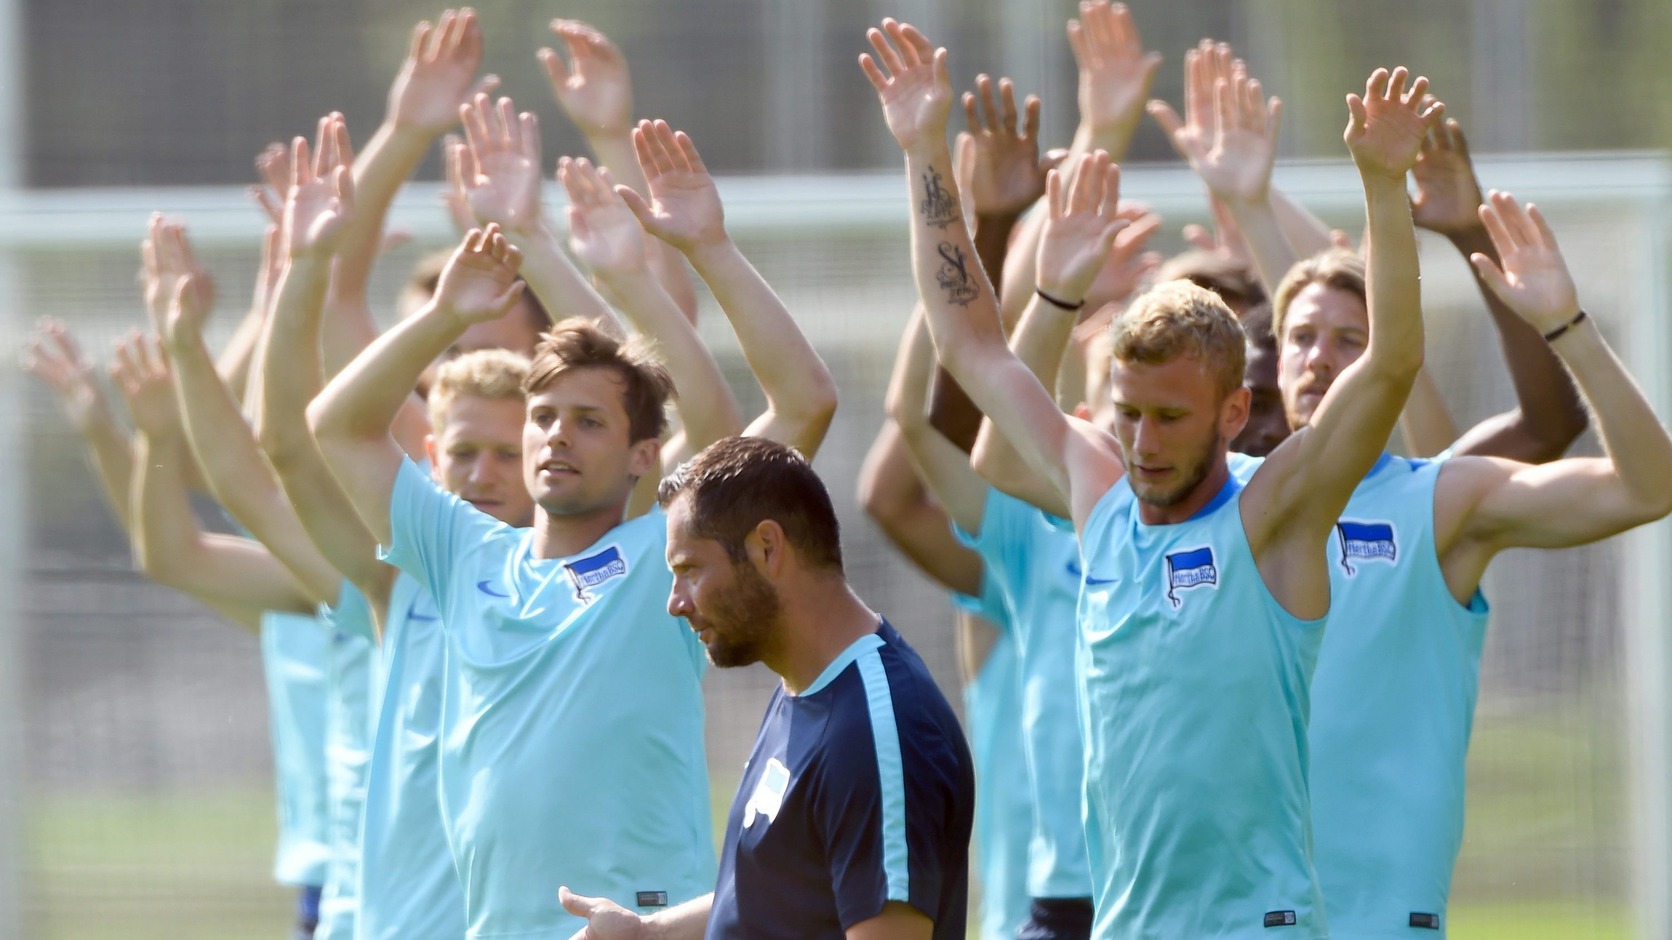 Dárdai Pál edzést vezényetl a Hertha BSC játékosainak - fotó: EPA/Soeren Stache